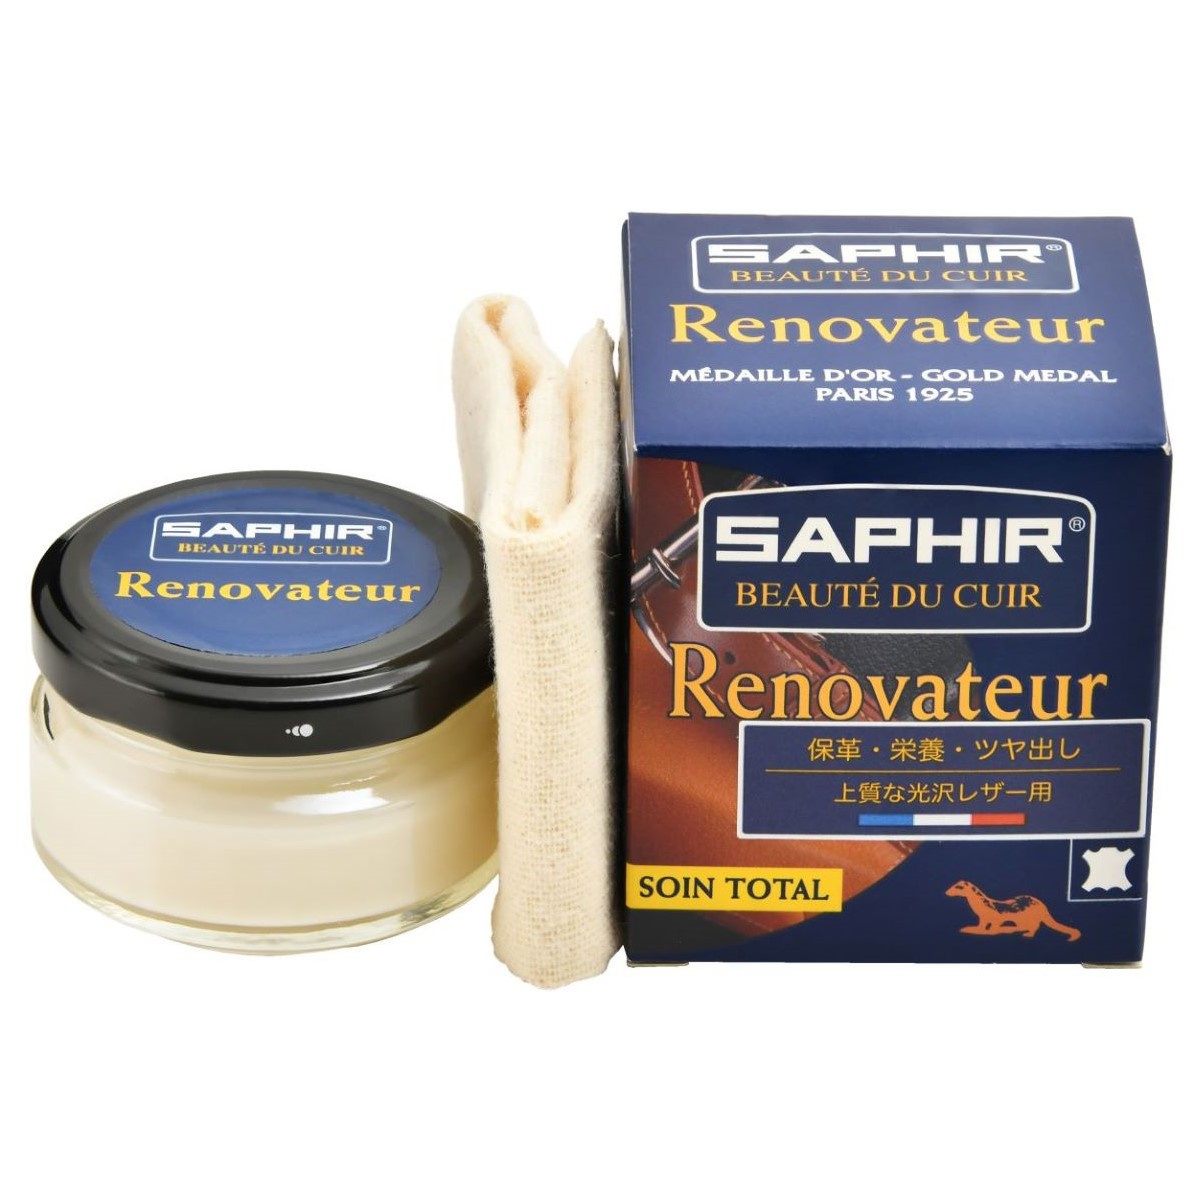 SAPHIR(サフィール) レノベイタークリーム 50ml